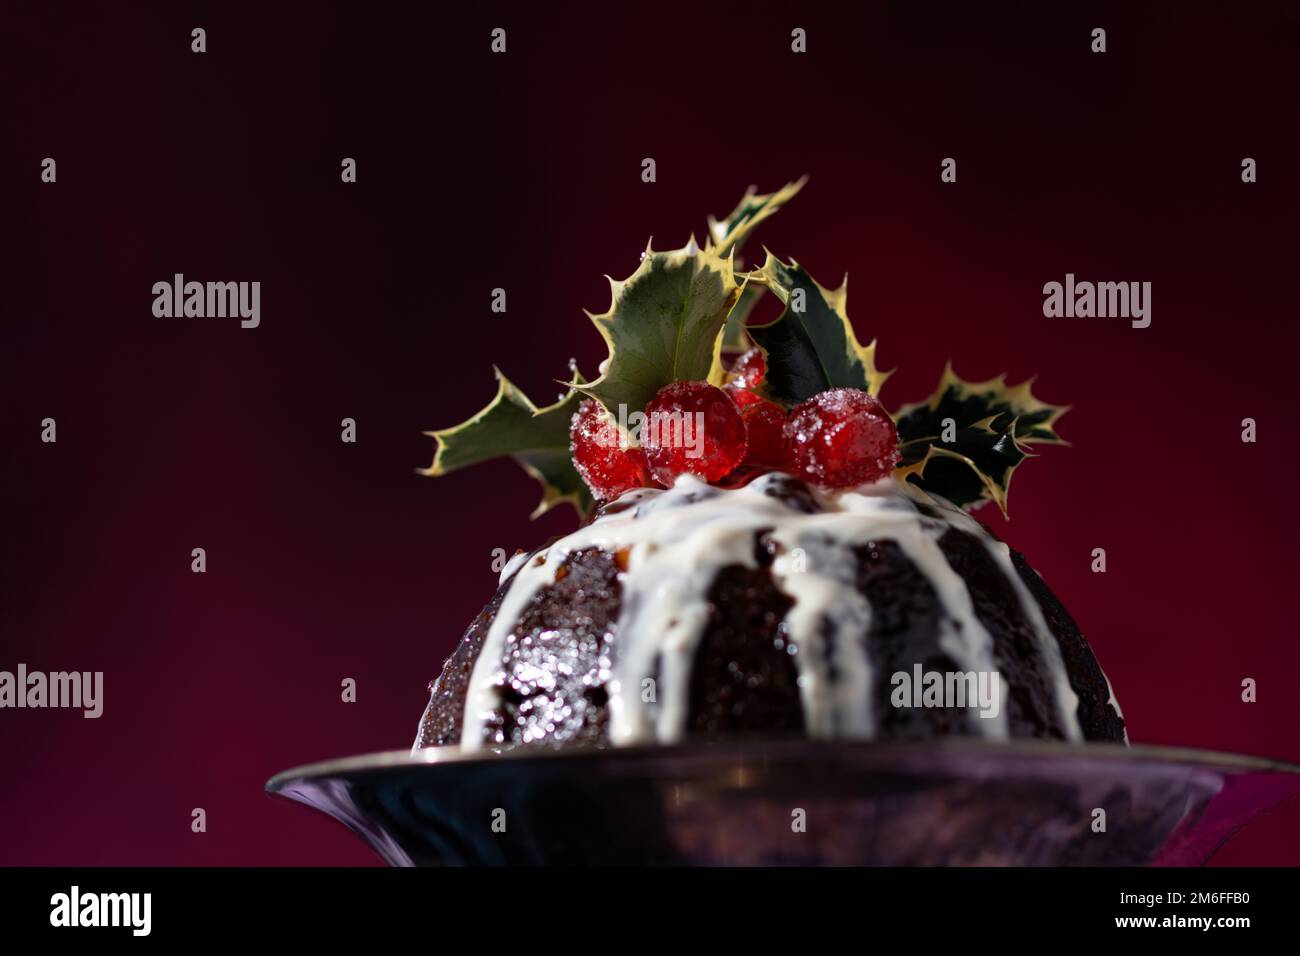 Tradizionale dessert natalizio al budino di frutta, decorato con ciliegie e foglie, con un classico sfondo rosso, blu e viola Foto Stock